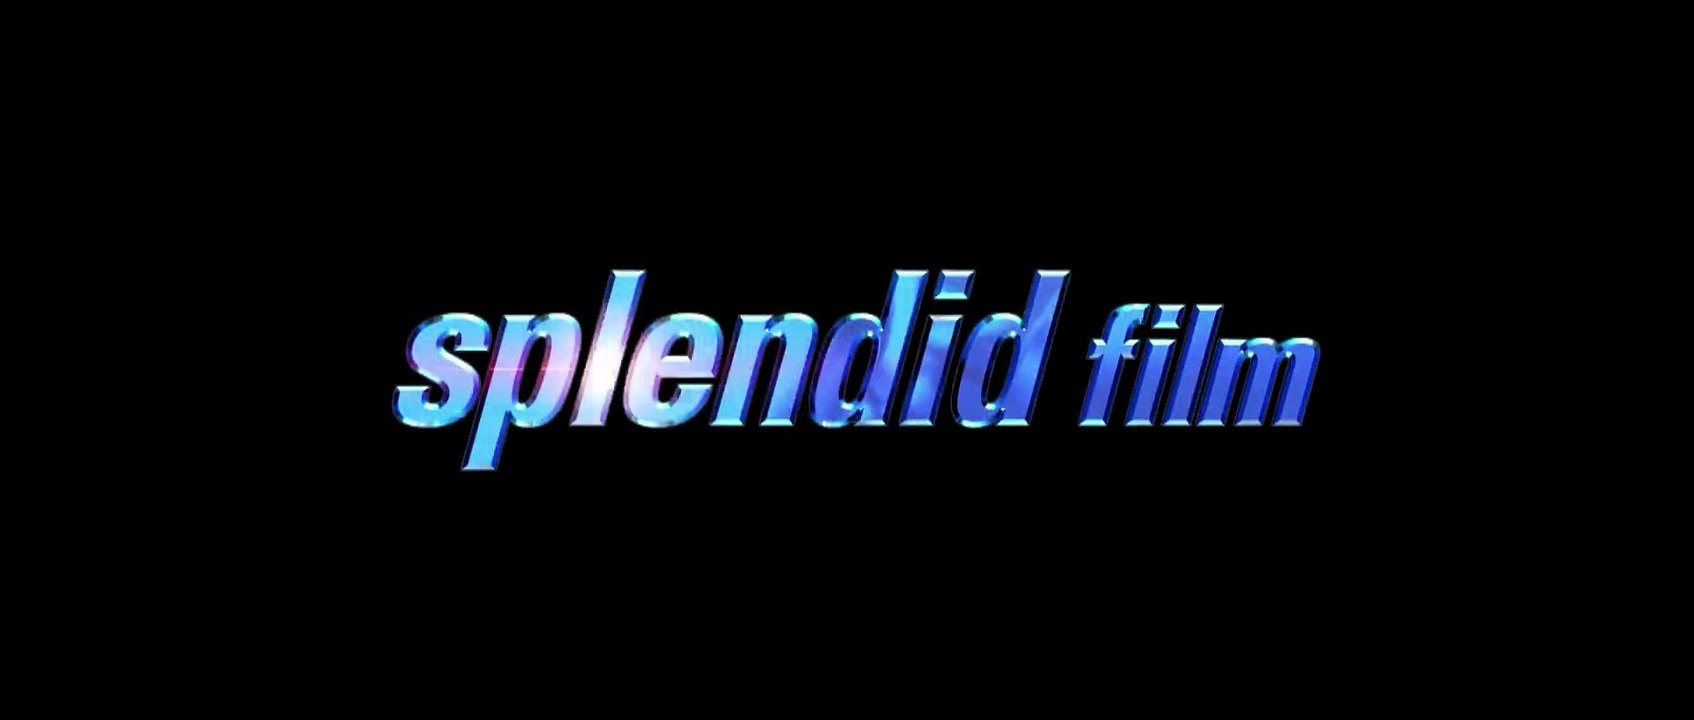 The Expendables 2 (2012) stream deutsch anschauen